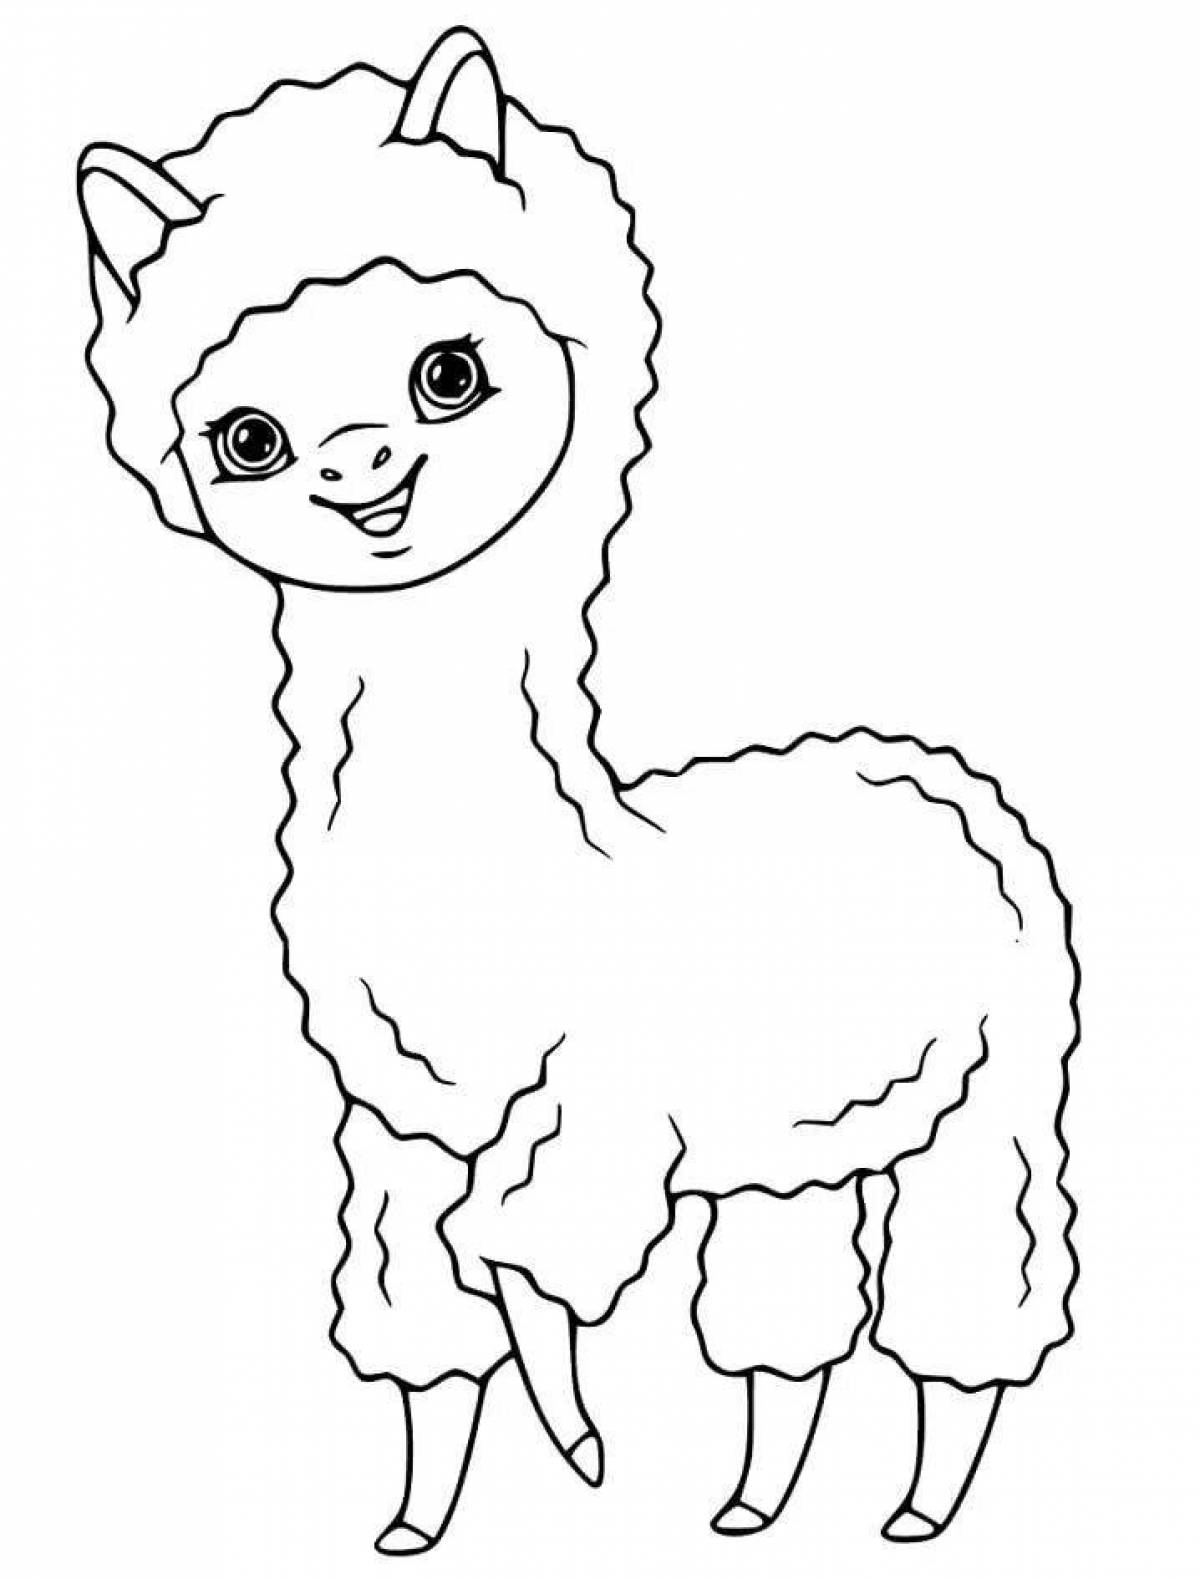 Joyful cute llama coloring book